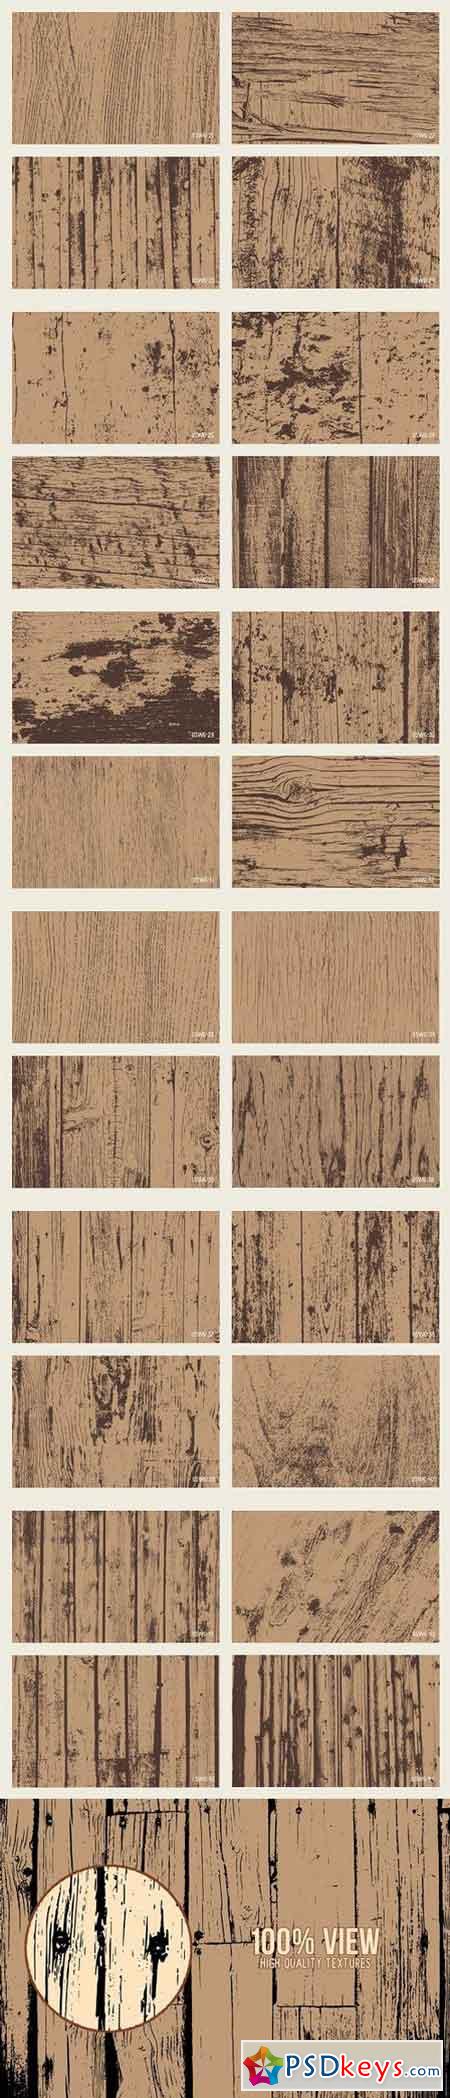 Wood Grain Textures 1346727